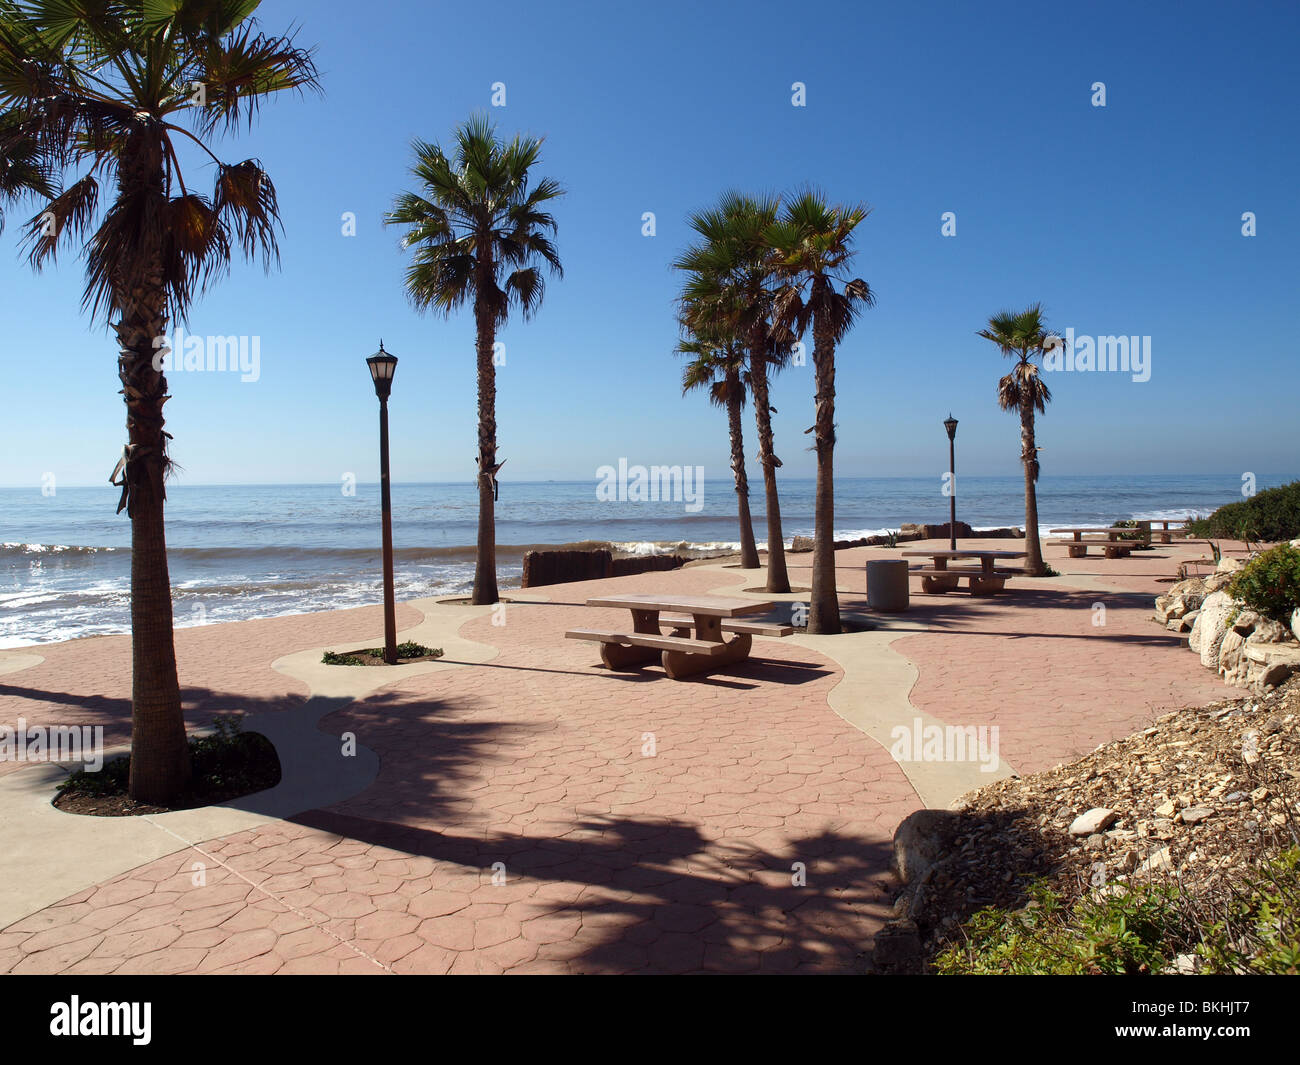 Royal Palms al punto di bianchi, Los Angeles County Beach. Foto Stock